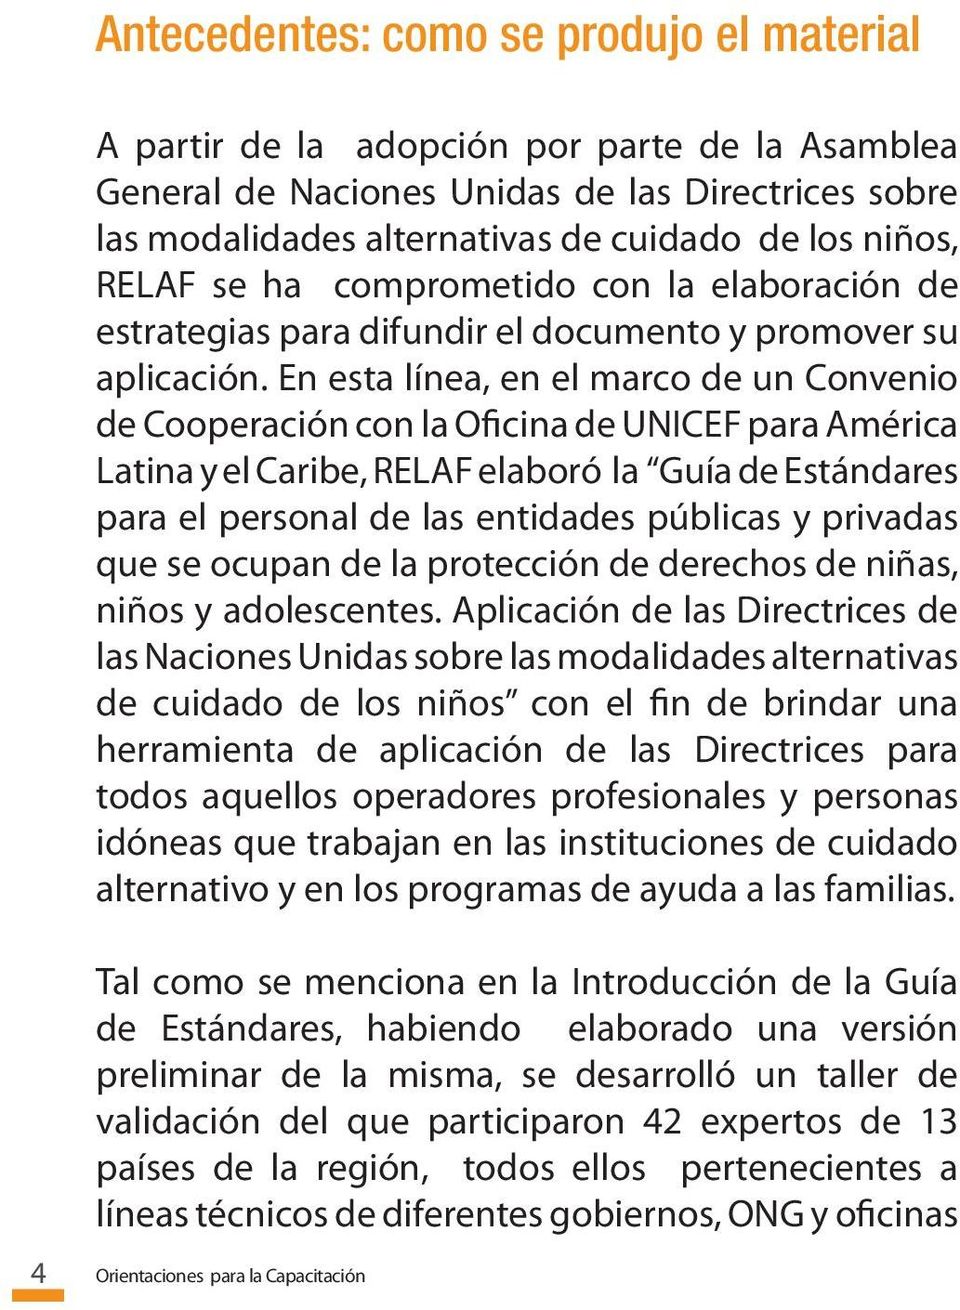 En esta línea, en el marco de un Convenio de Cooperación con la Oficina de UNICEF para América Latina y el Caribe, RELAF elaboró la Guía de Estándares para el personal de las entidades públicas y